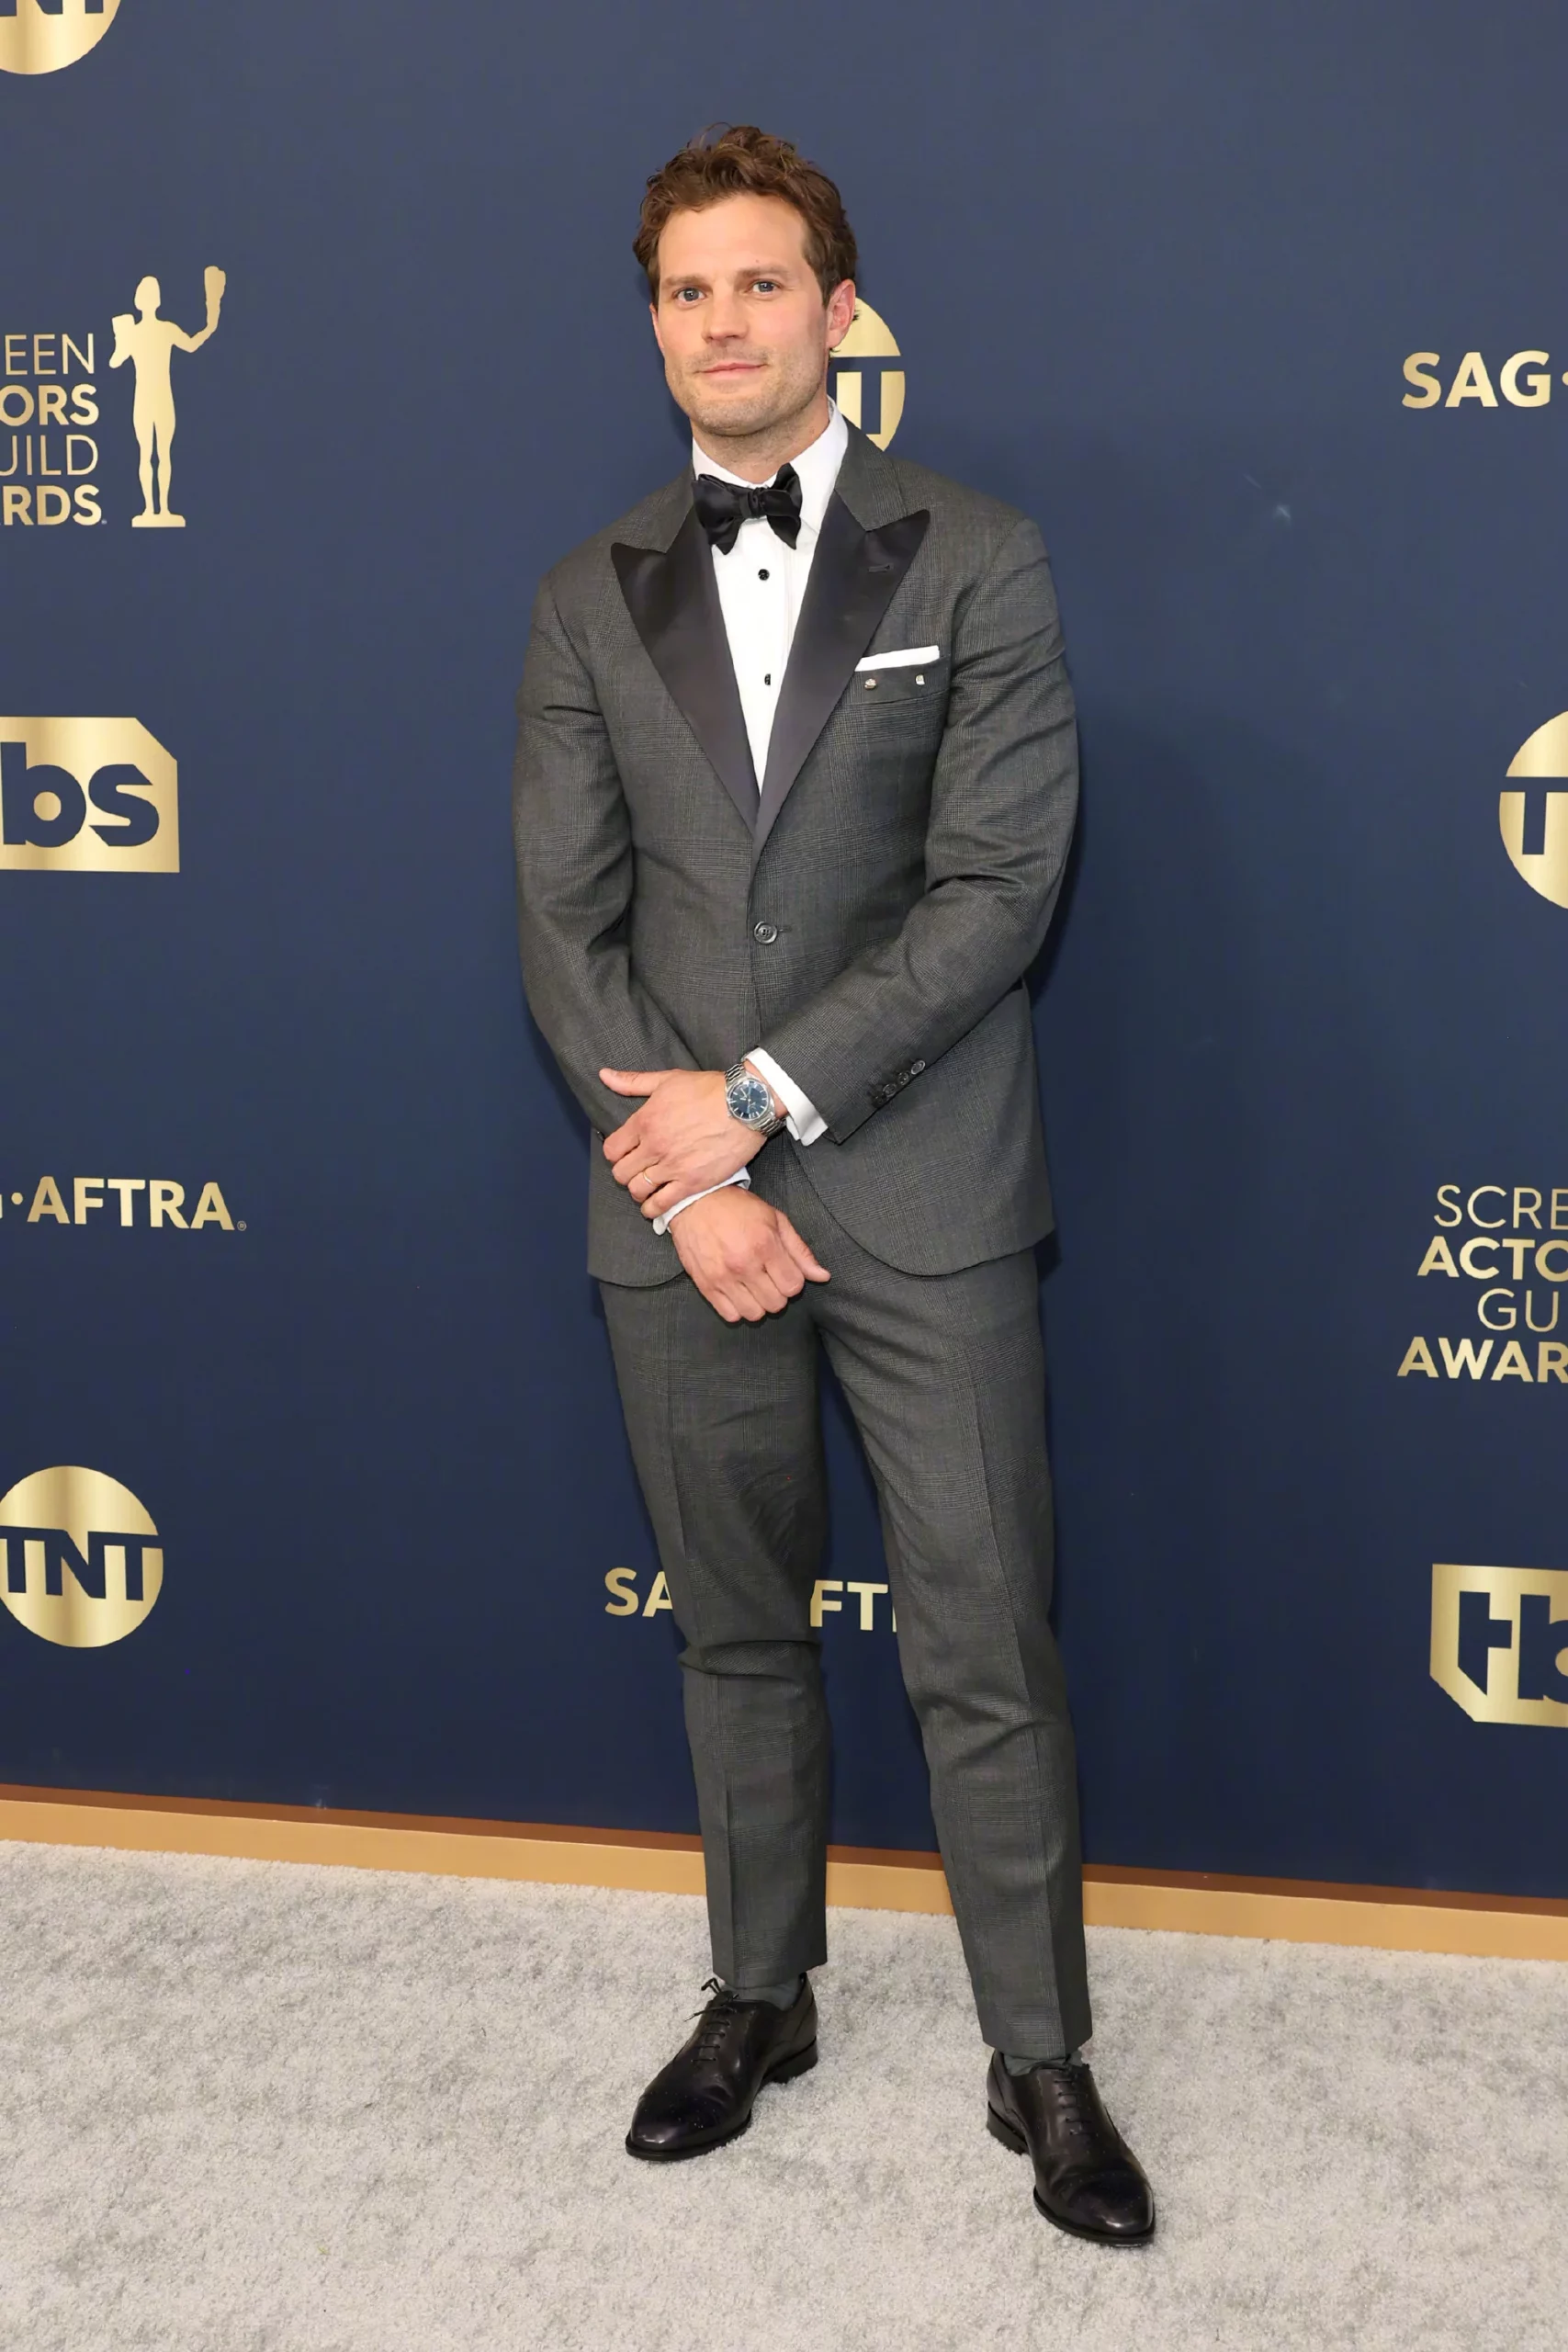 28th Screen Actors Guild Awards red carpet, Jamie Dornan debuts